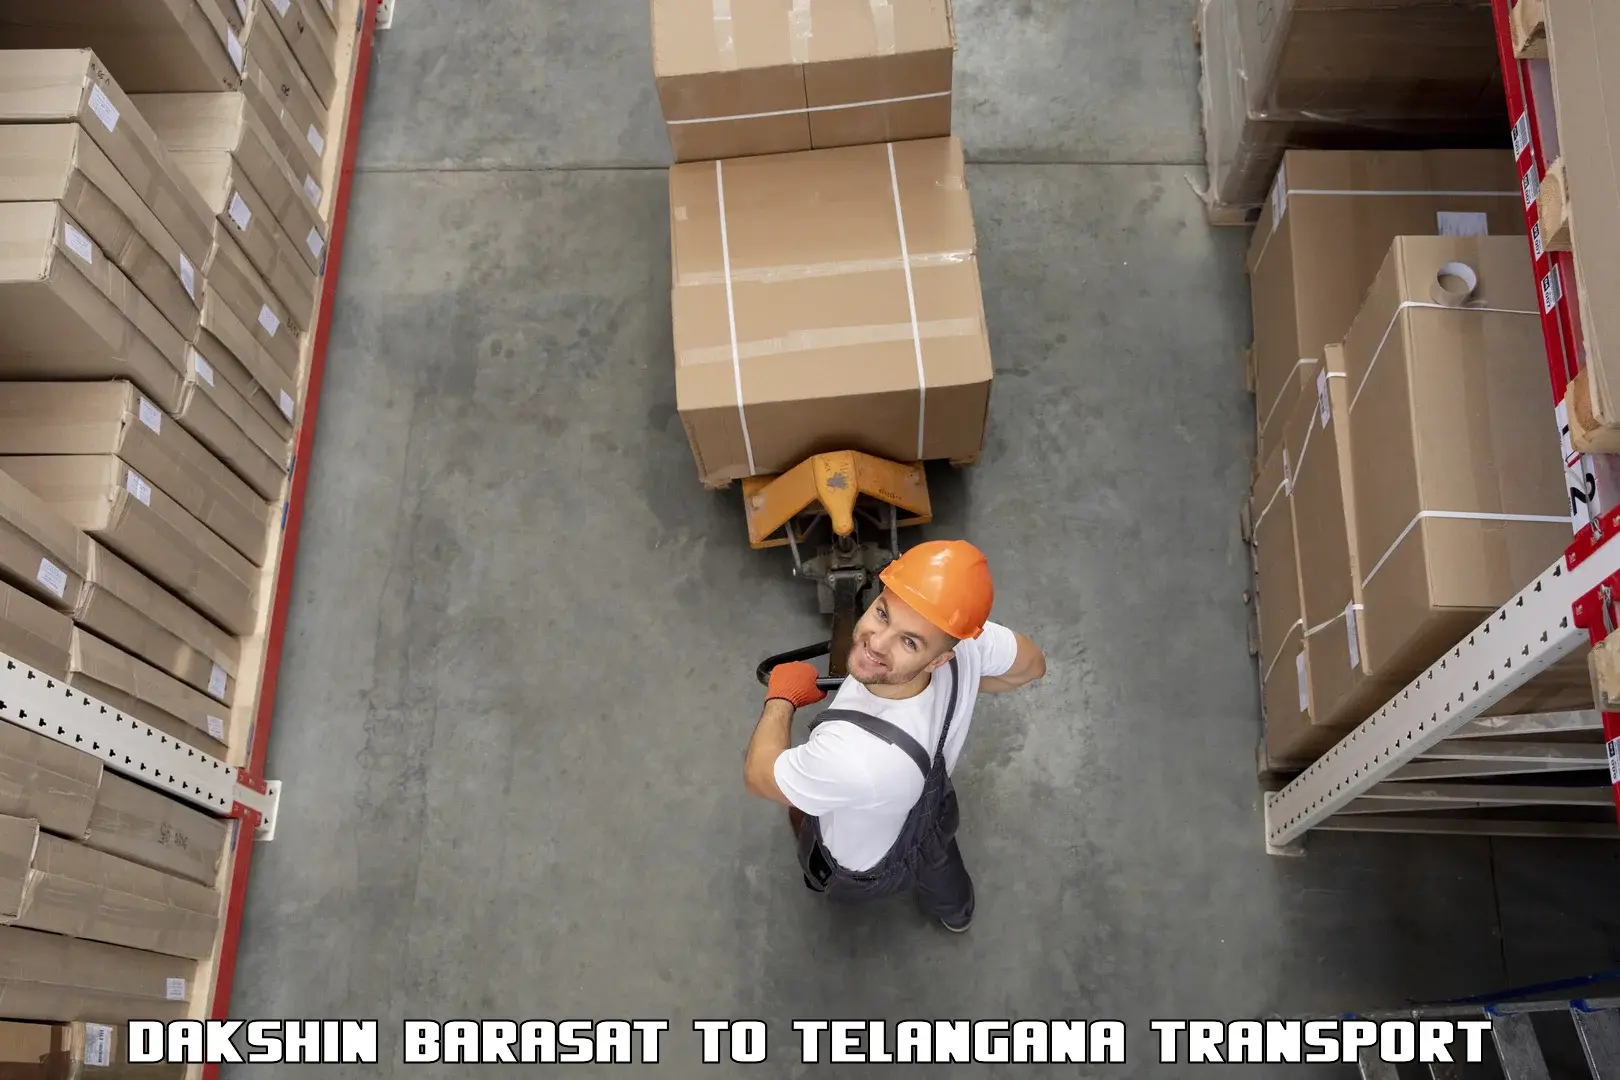 Road transport online services Dakshin Barasat to Karimnagar